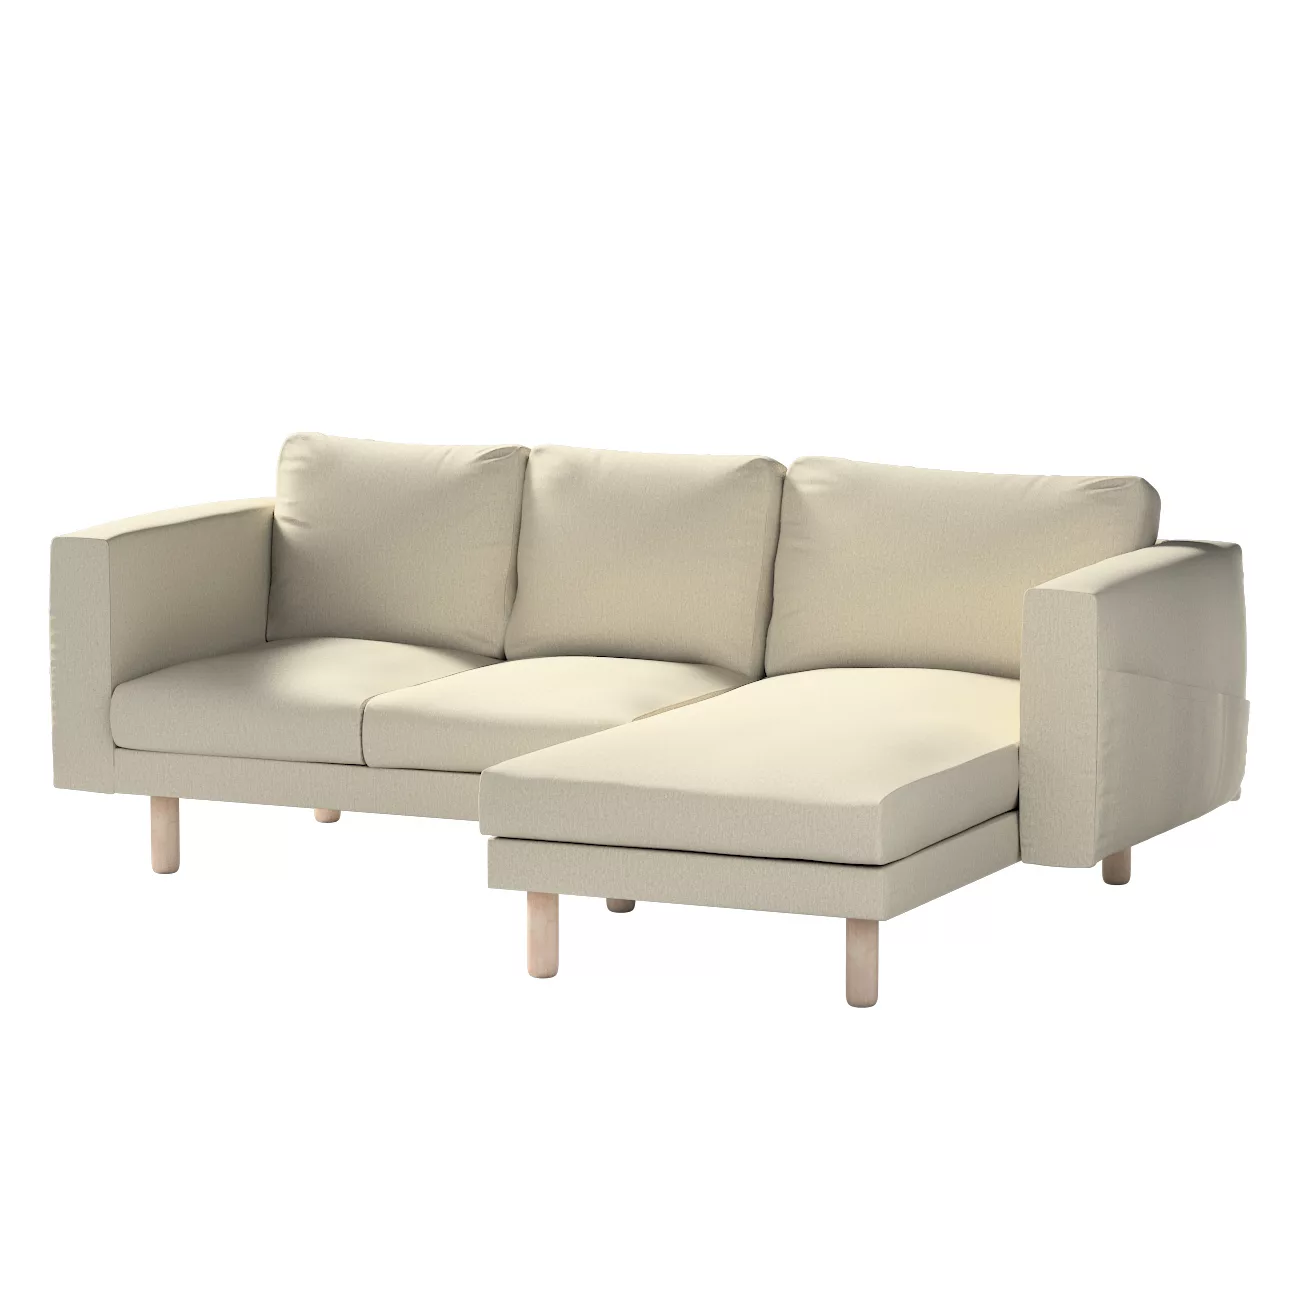 Bezug für Norsborg 3-Sitzer Sofa mit Recamiere, beige-grau, Norsborg Bezug günstig online kaufen